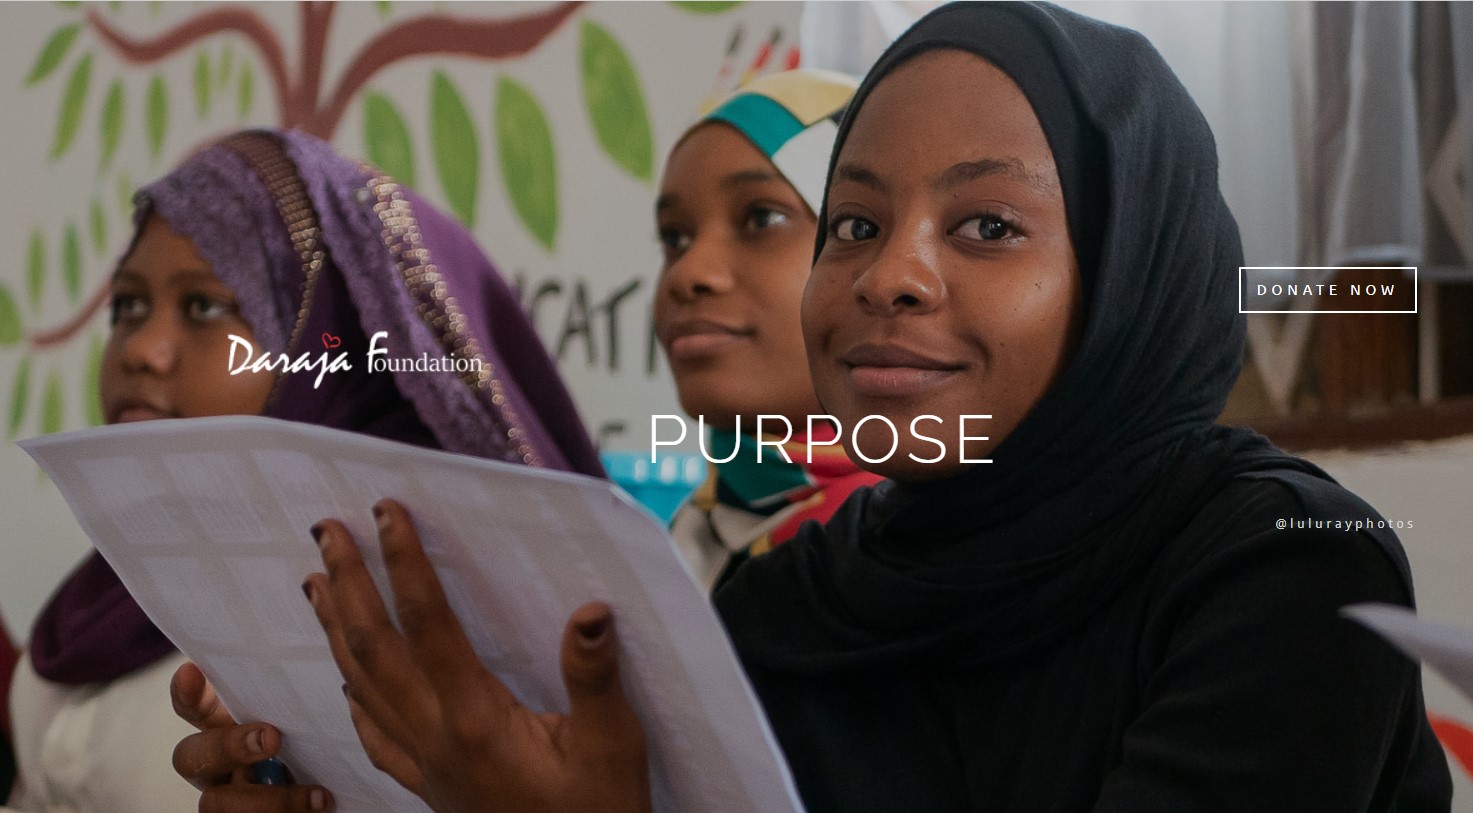 Cel: Fundacja Daraja na Zanzibarze – Zapewnienie młodym ludziom rodziny i przyszłości